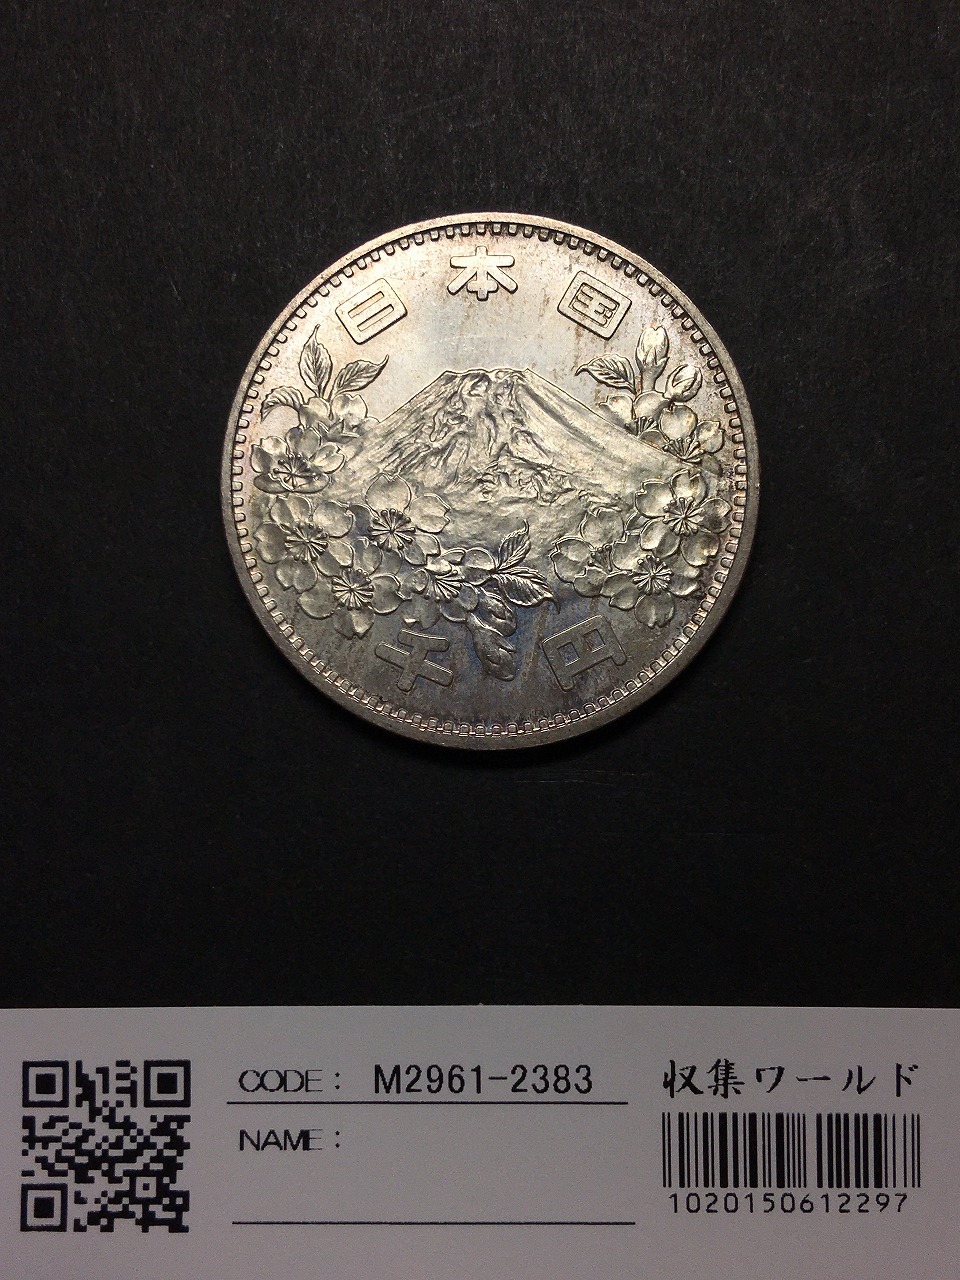 東京オリンピック記念 1000円銀貨 1964年 NGC MS65 トーン - 旧貨幣